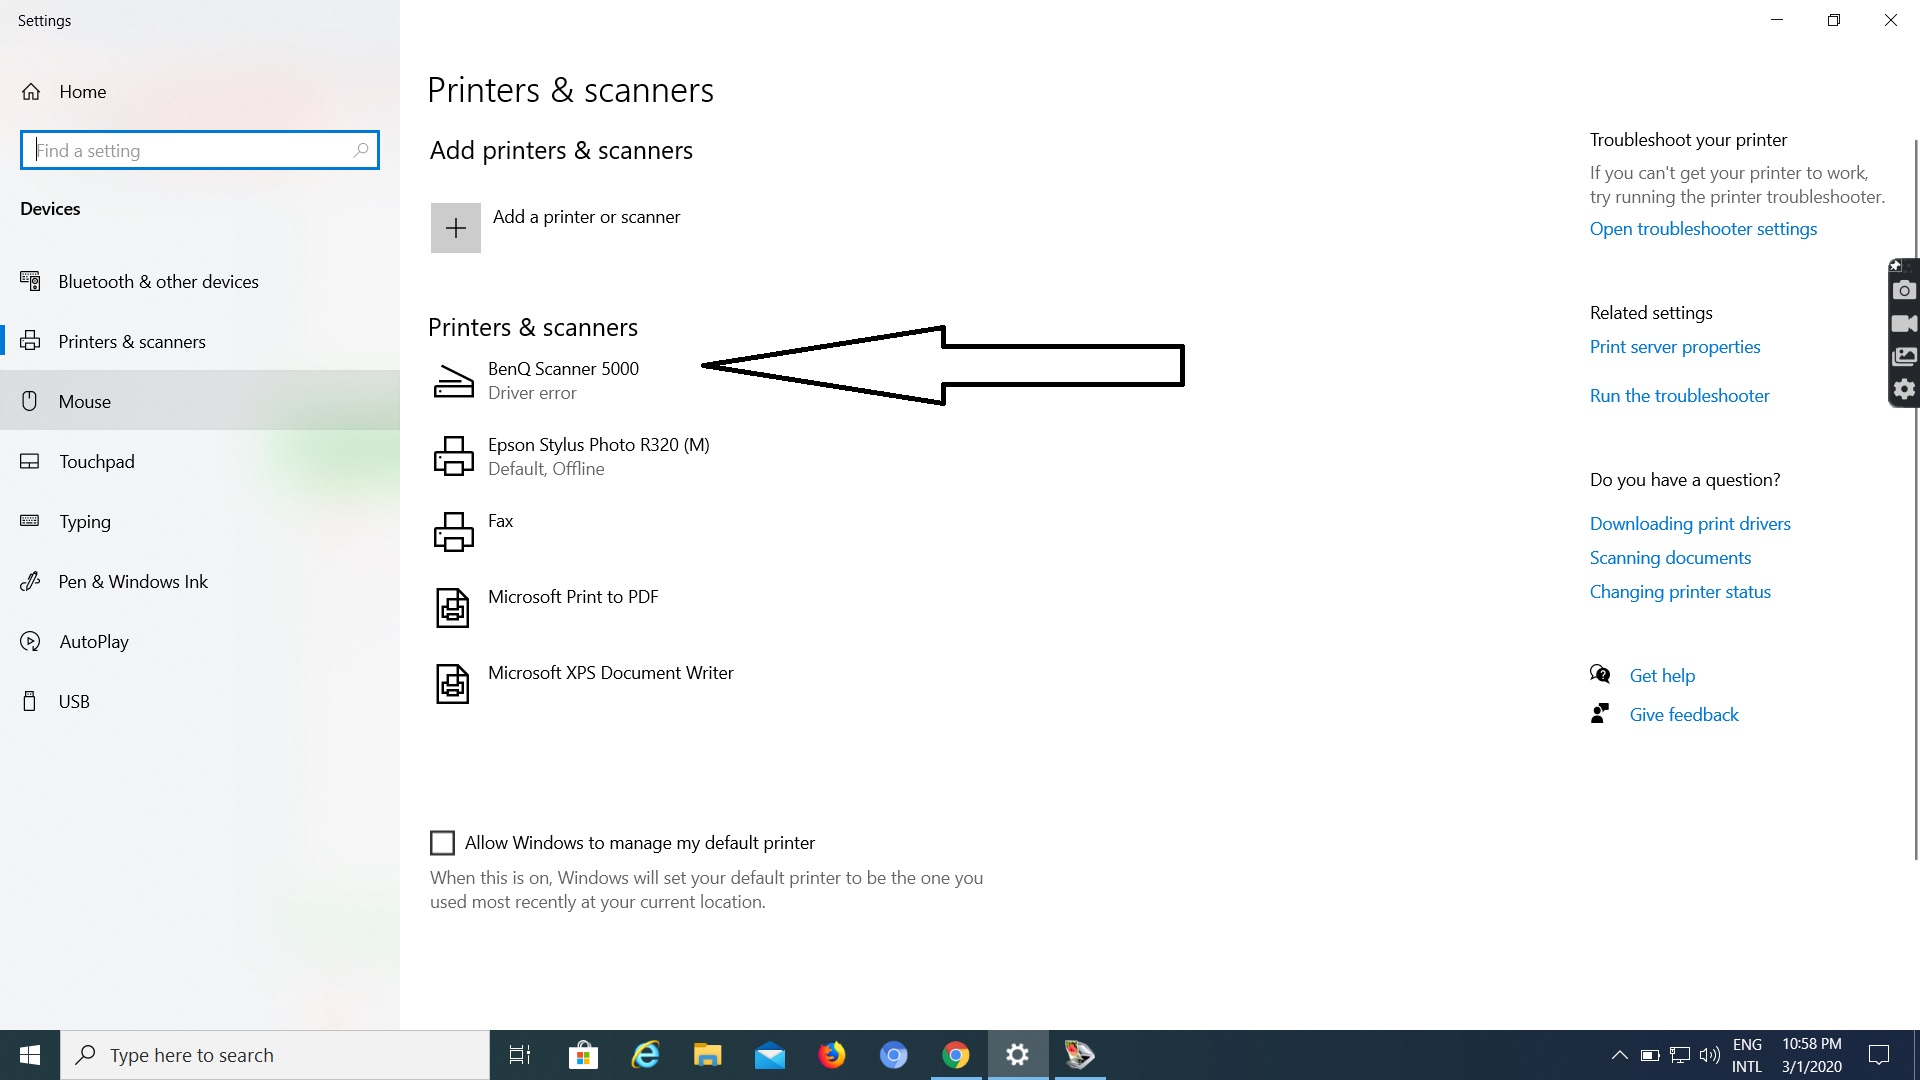 Benq Scanner 5000 is not working in Windows 10 df2cd7fe-066d-4ecd-873a-9a07f7afb208?upload=true.jpg